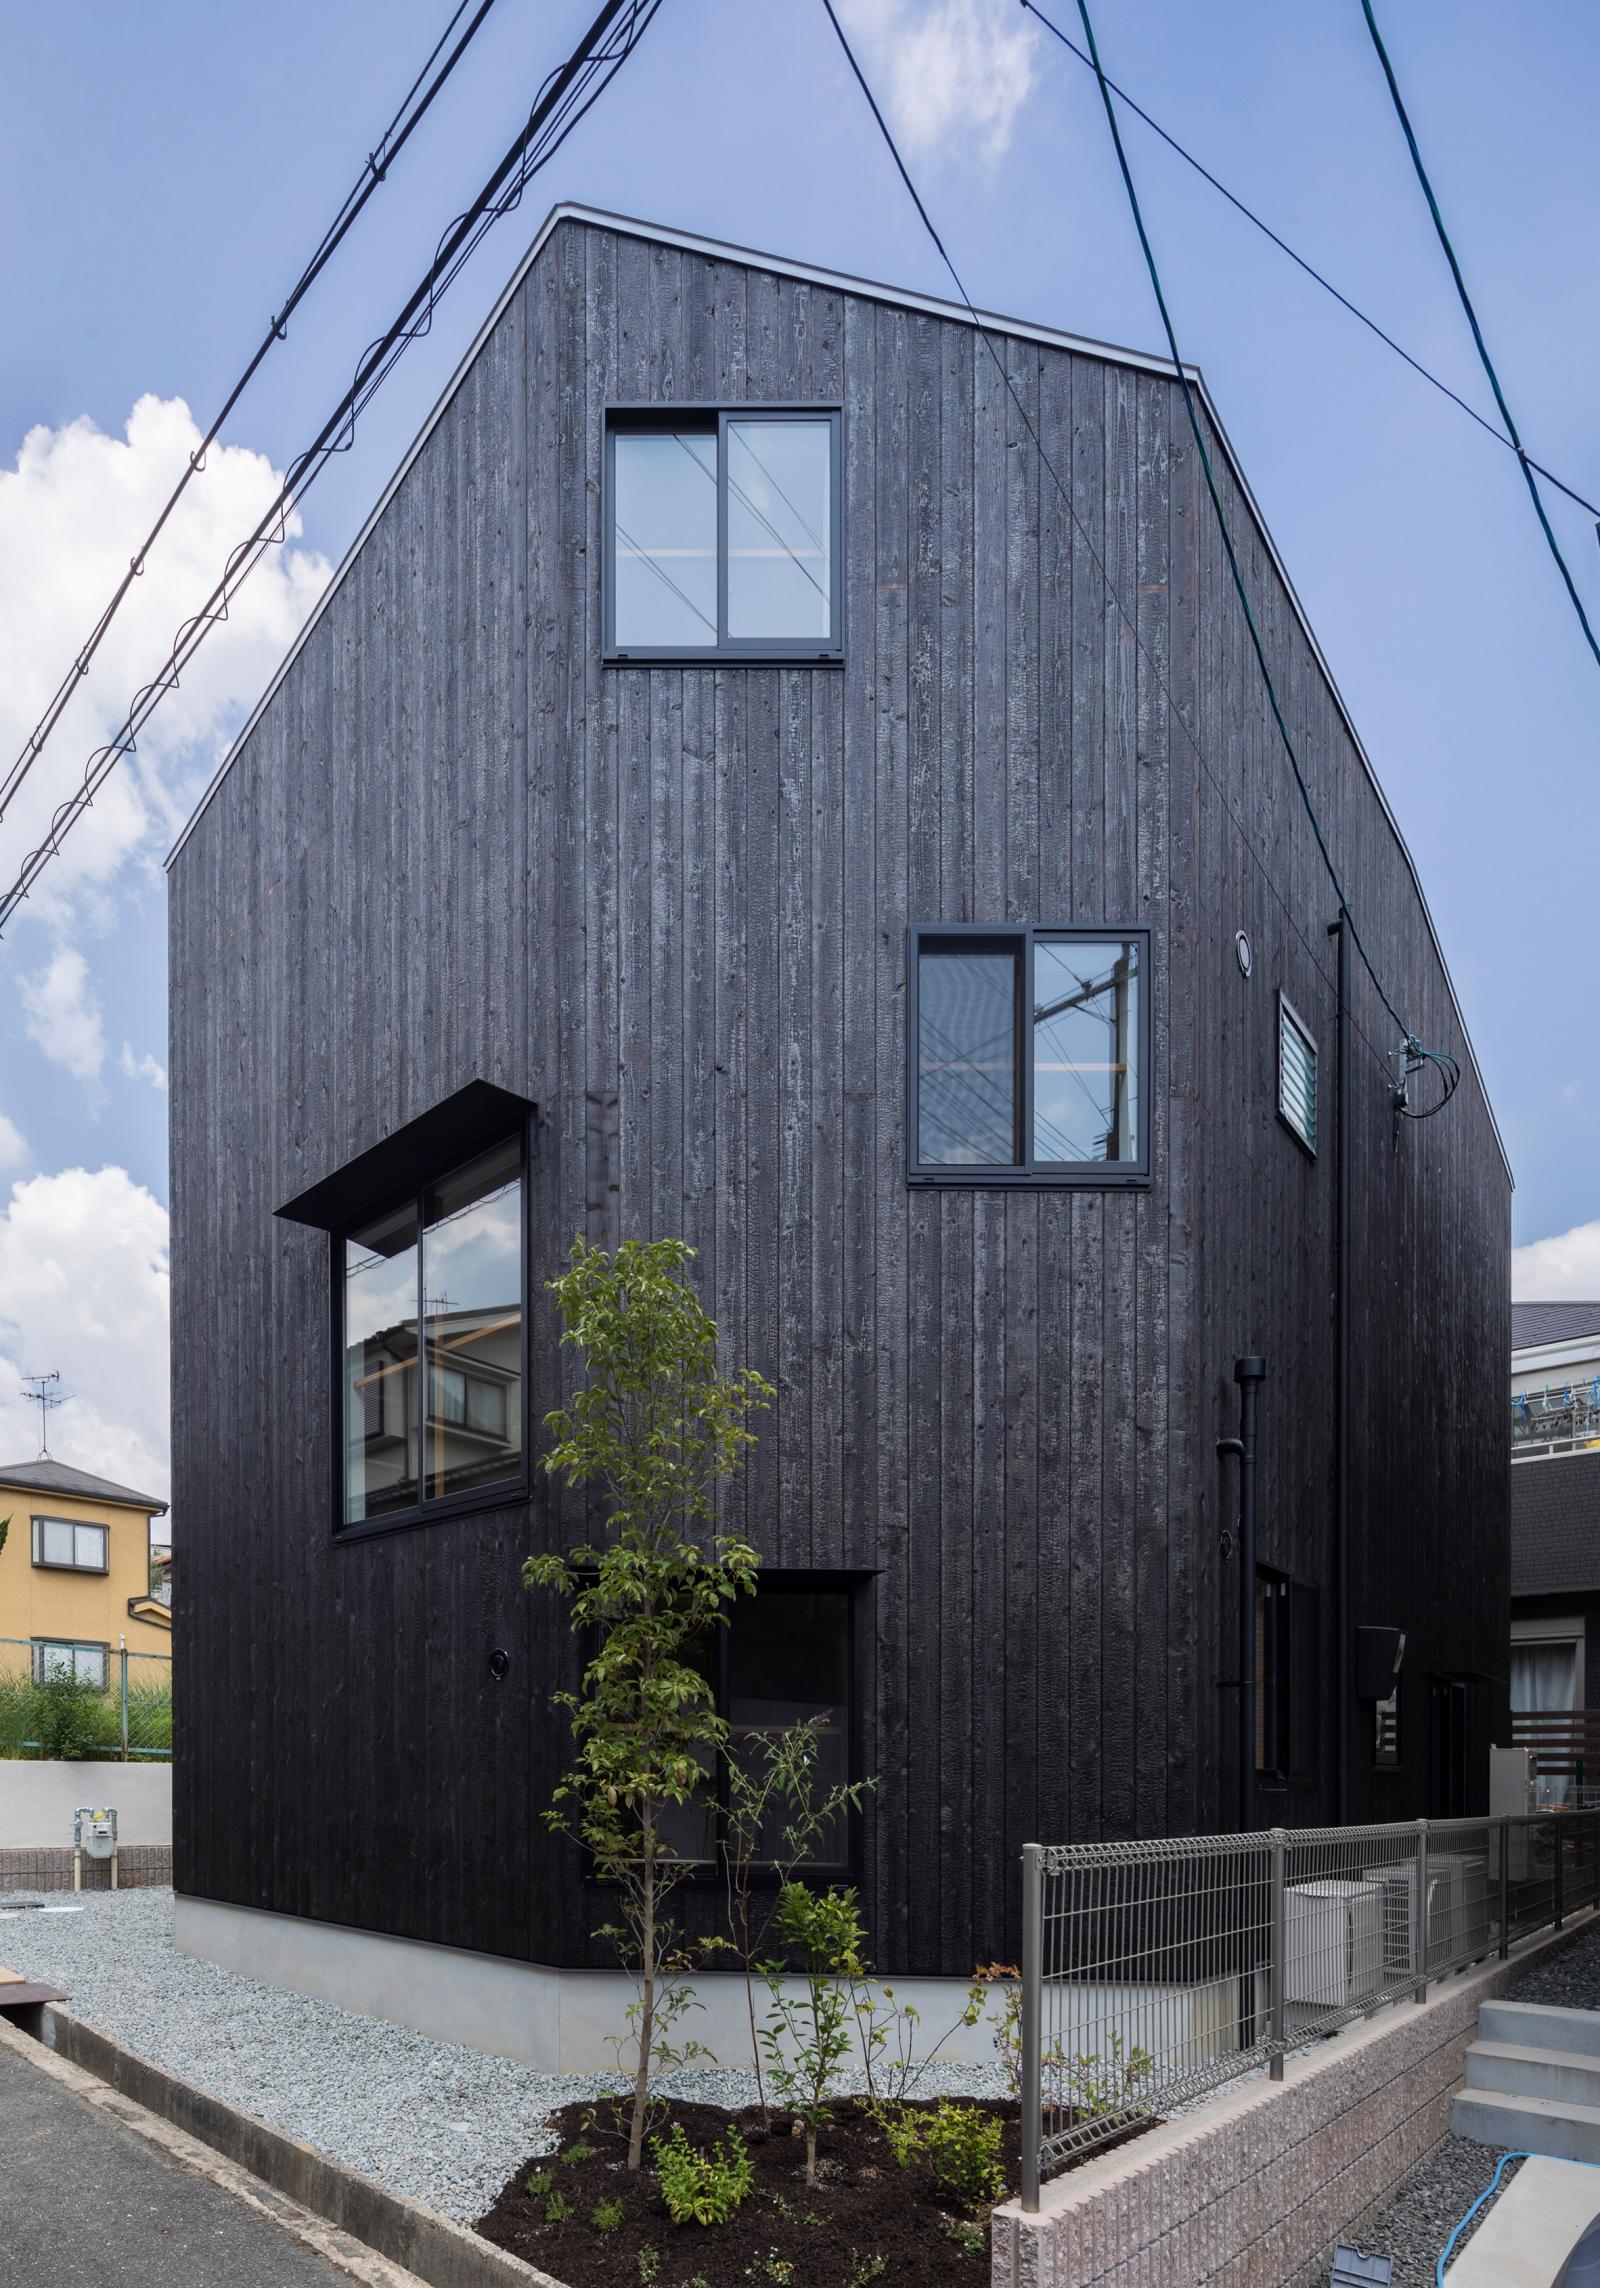 Hình ảnh cận cảnh nhà Nhật màu xám đen, ô cửa sổ kính trong suốt